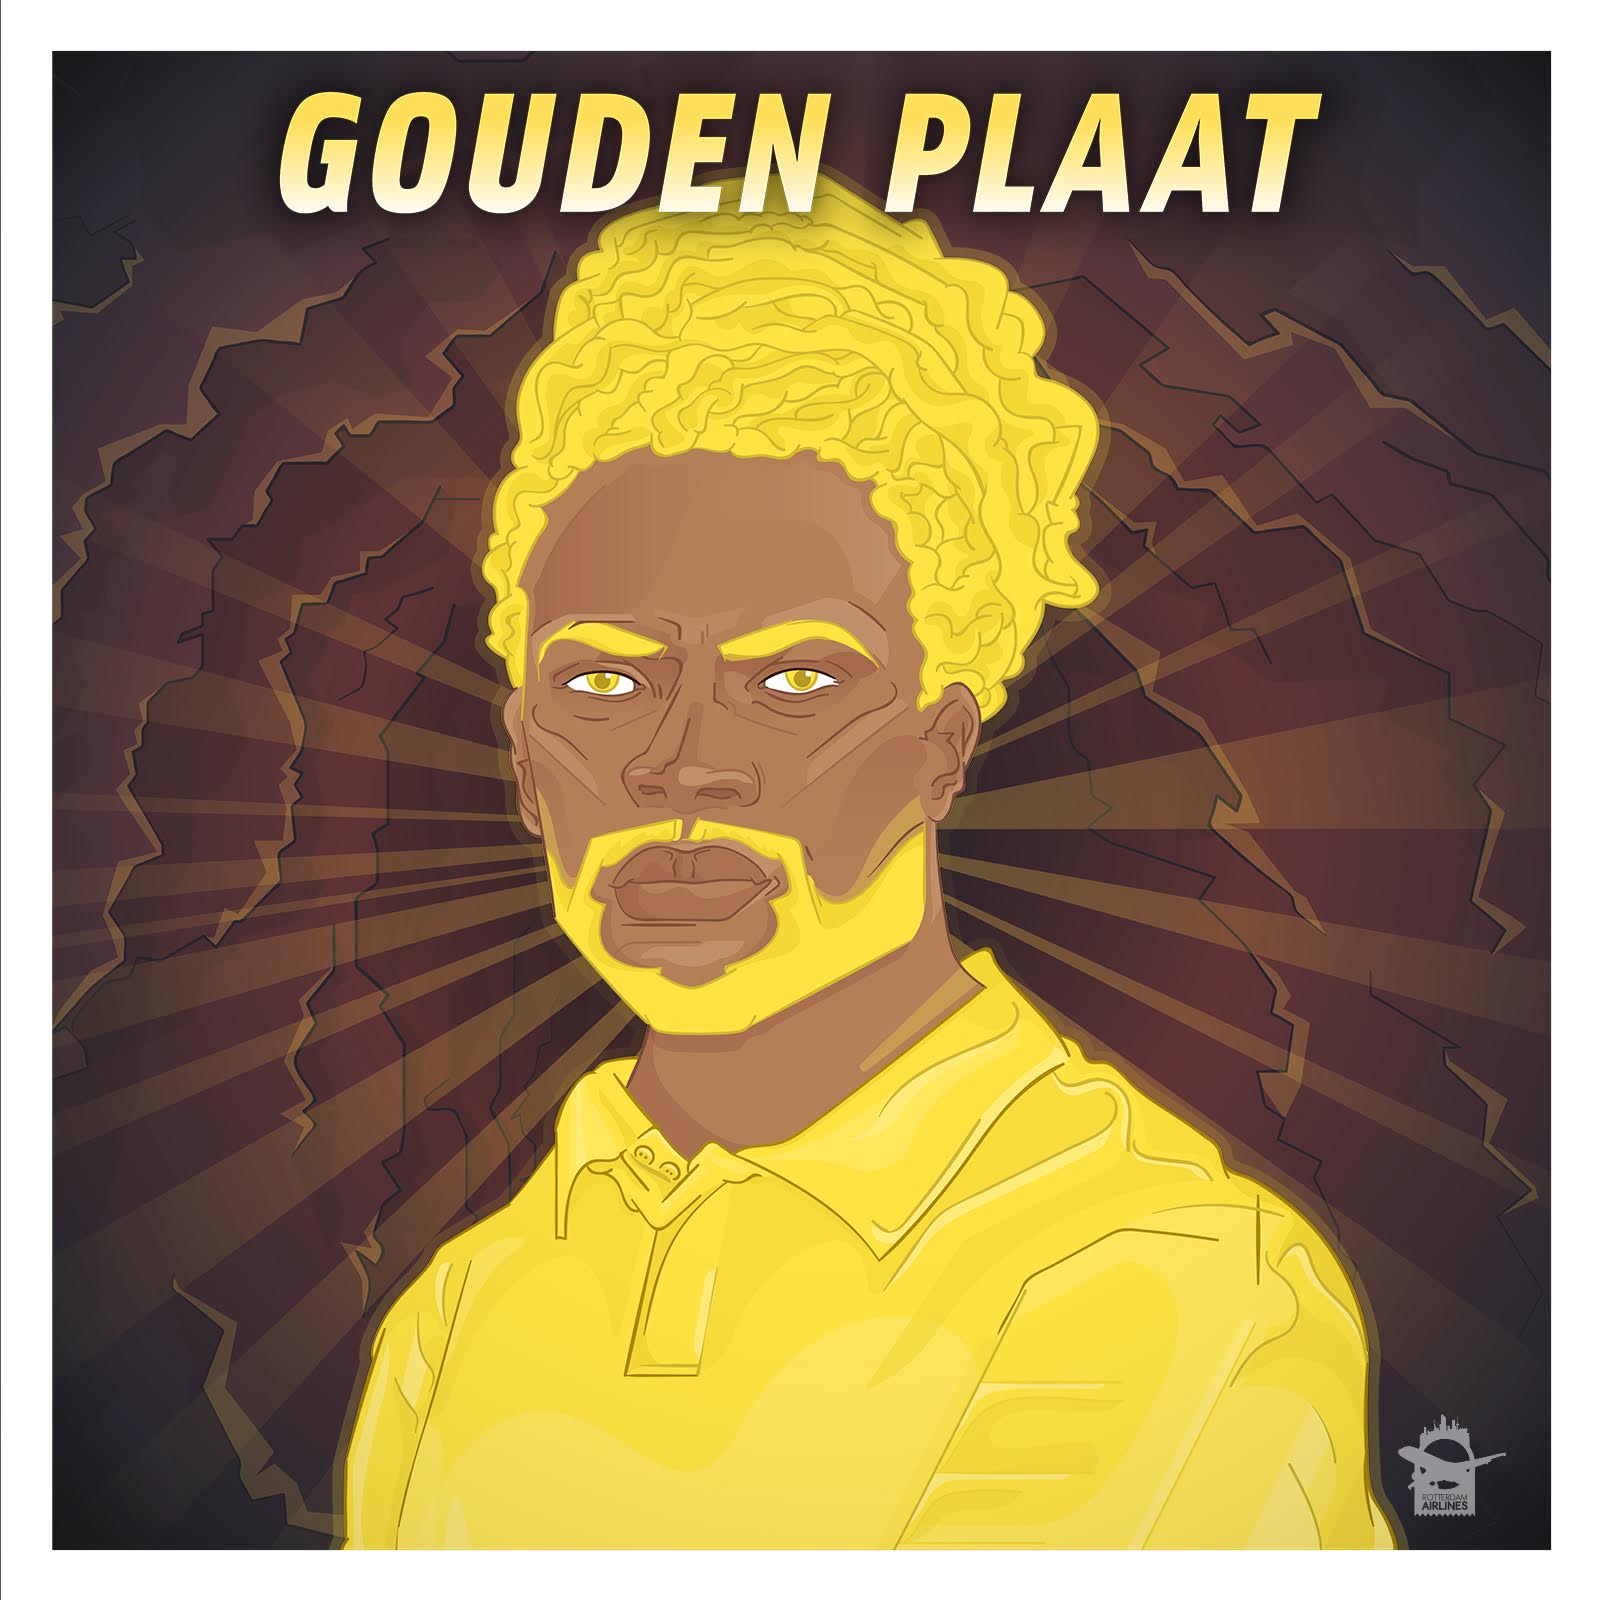 Jairzinho - Gouden Plaat (EP artwork cover)